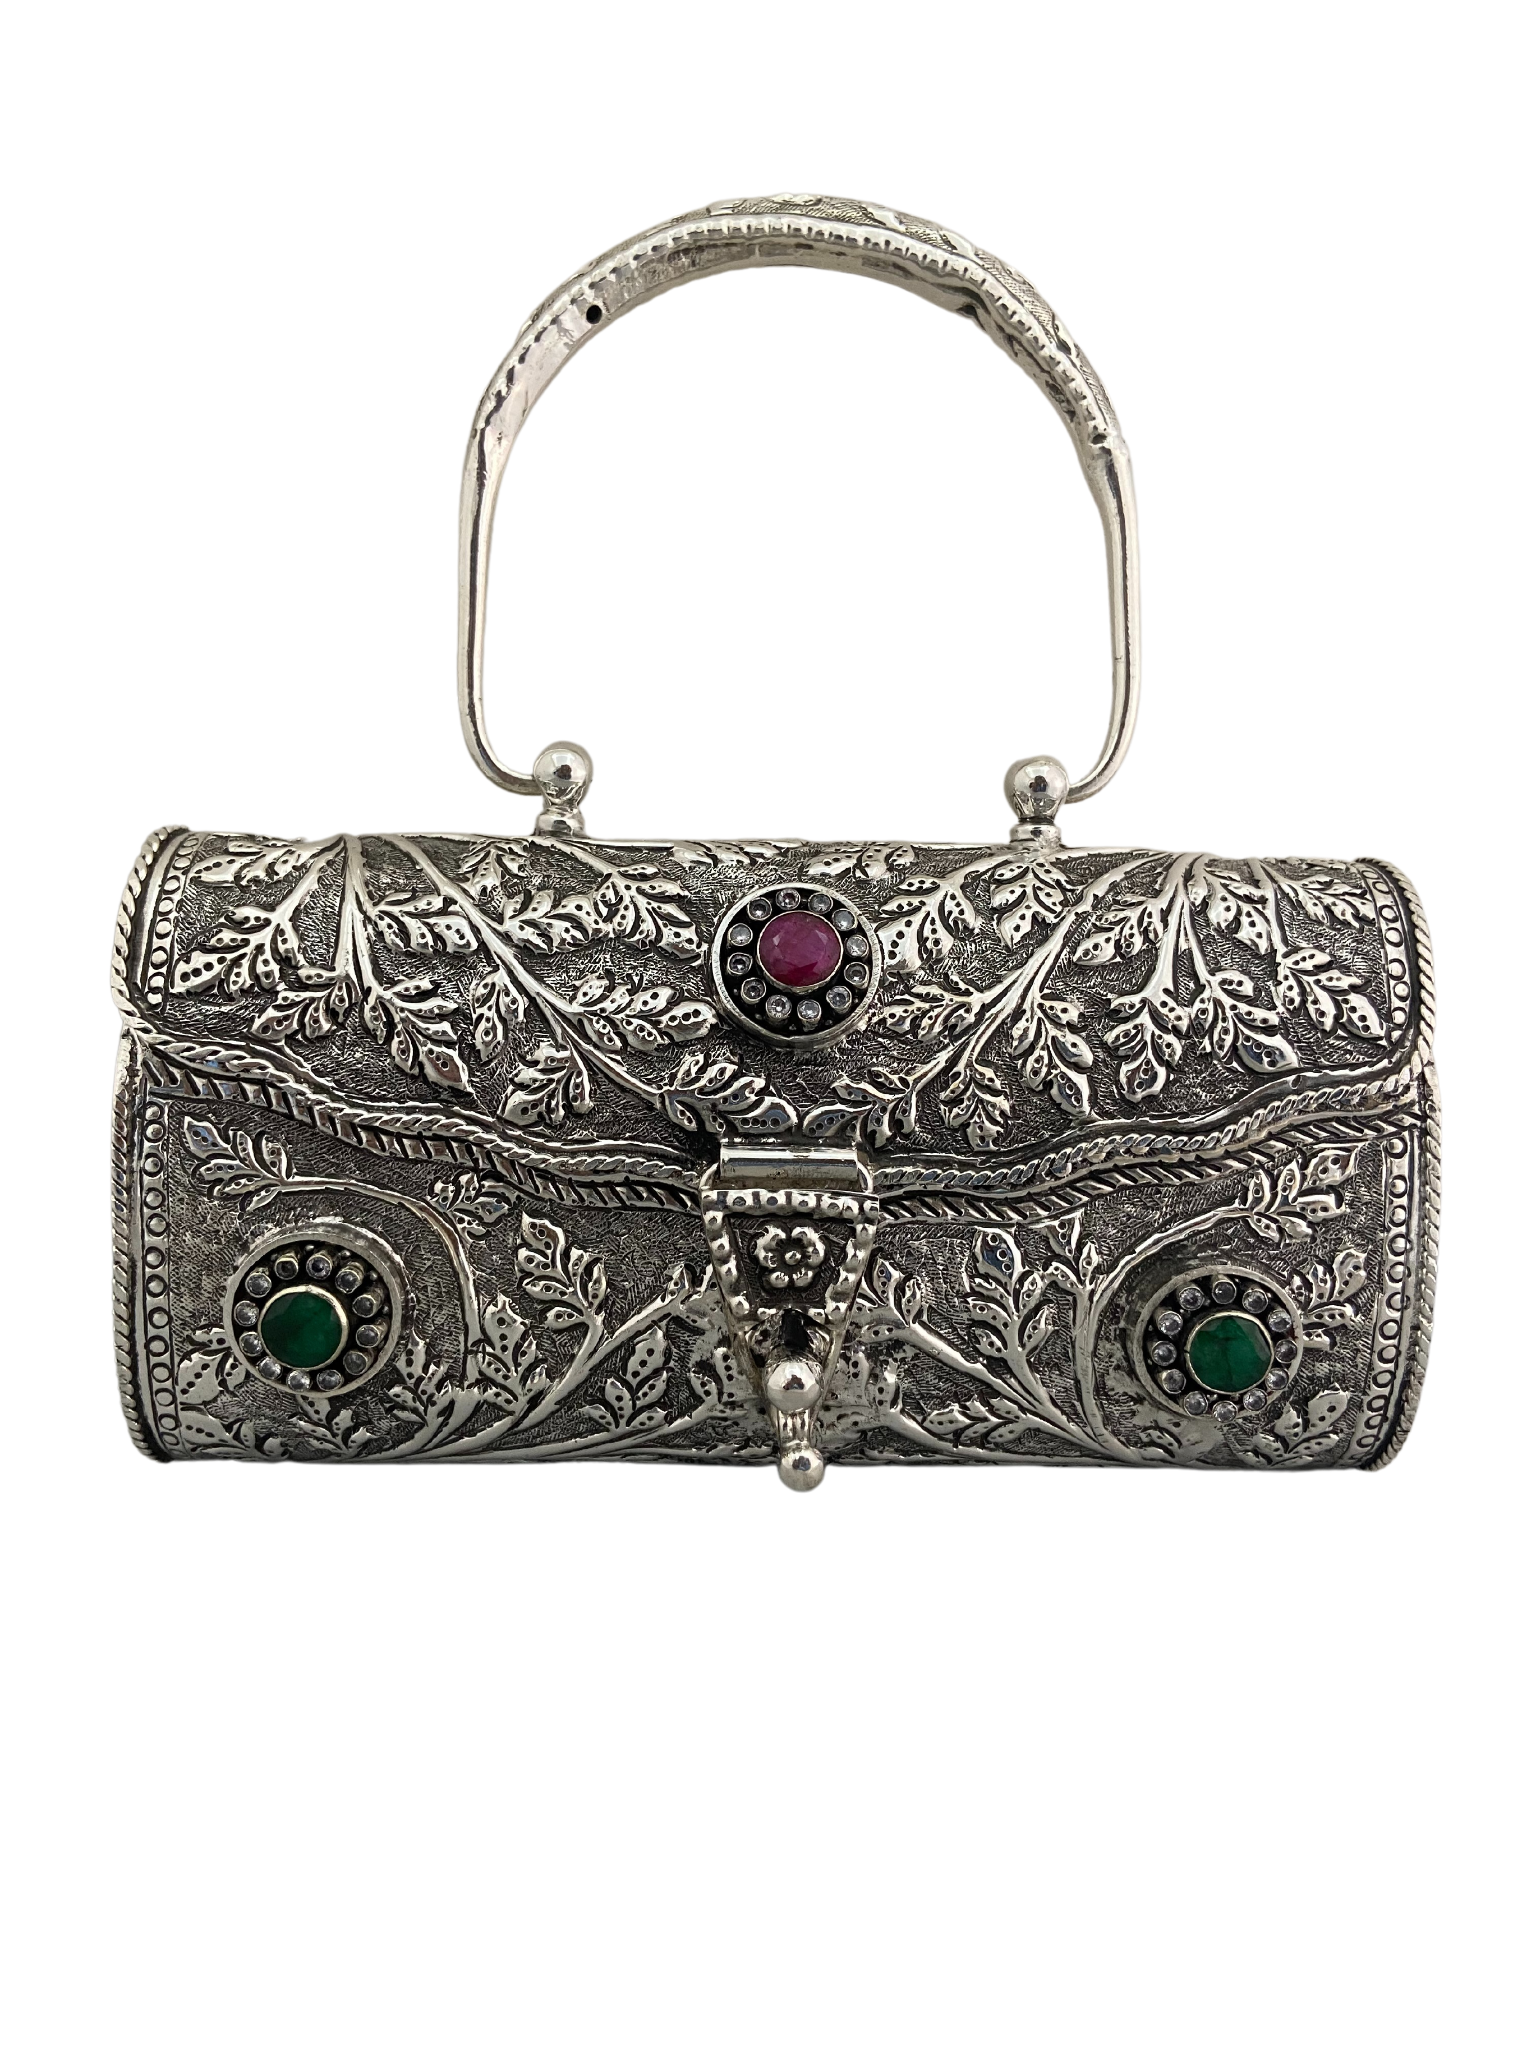 Antique Sterling Silver Mesh Purse Hand Bag Shoulder Bag ZC2-30 | eBay